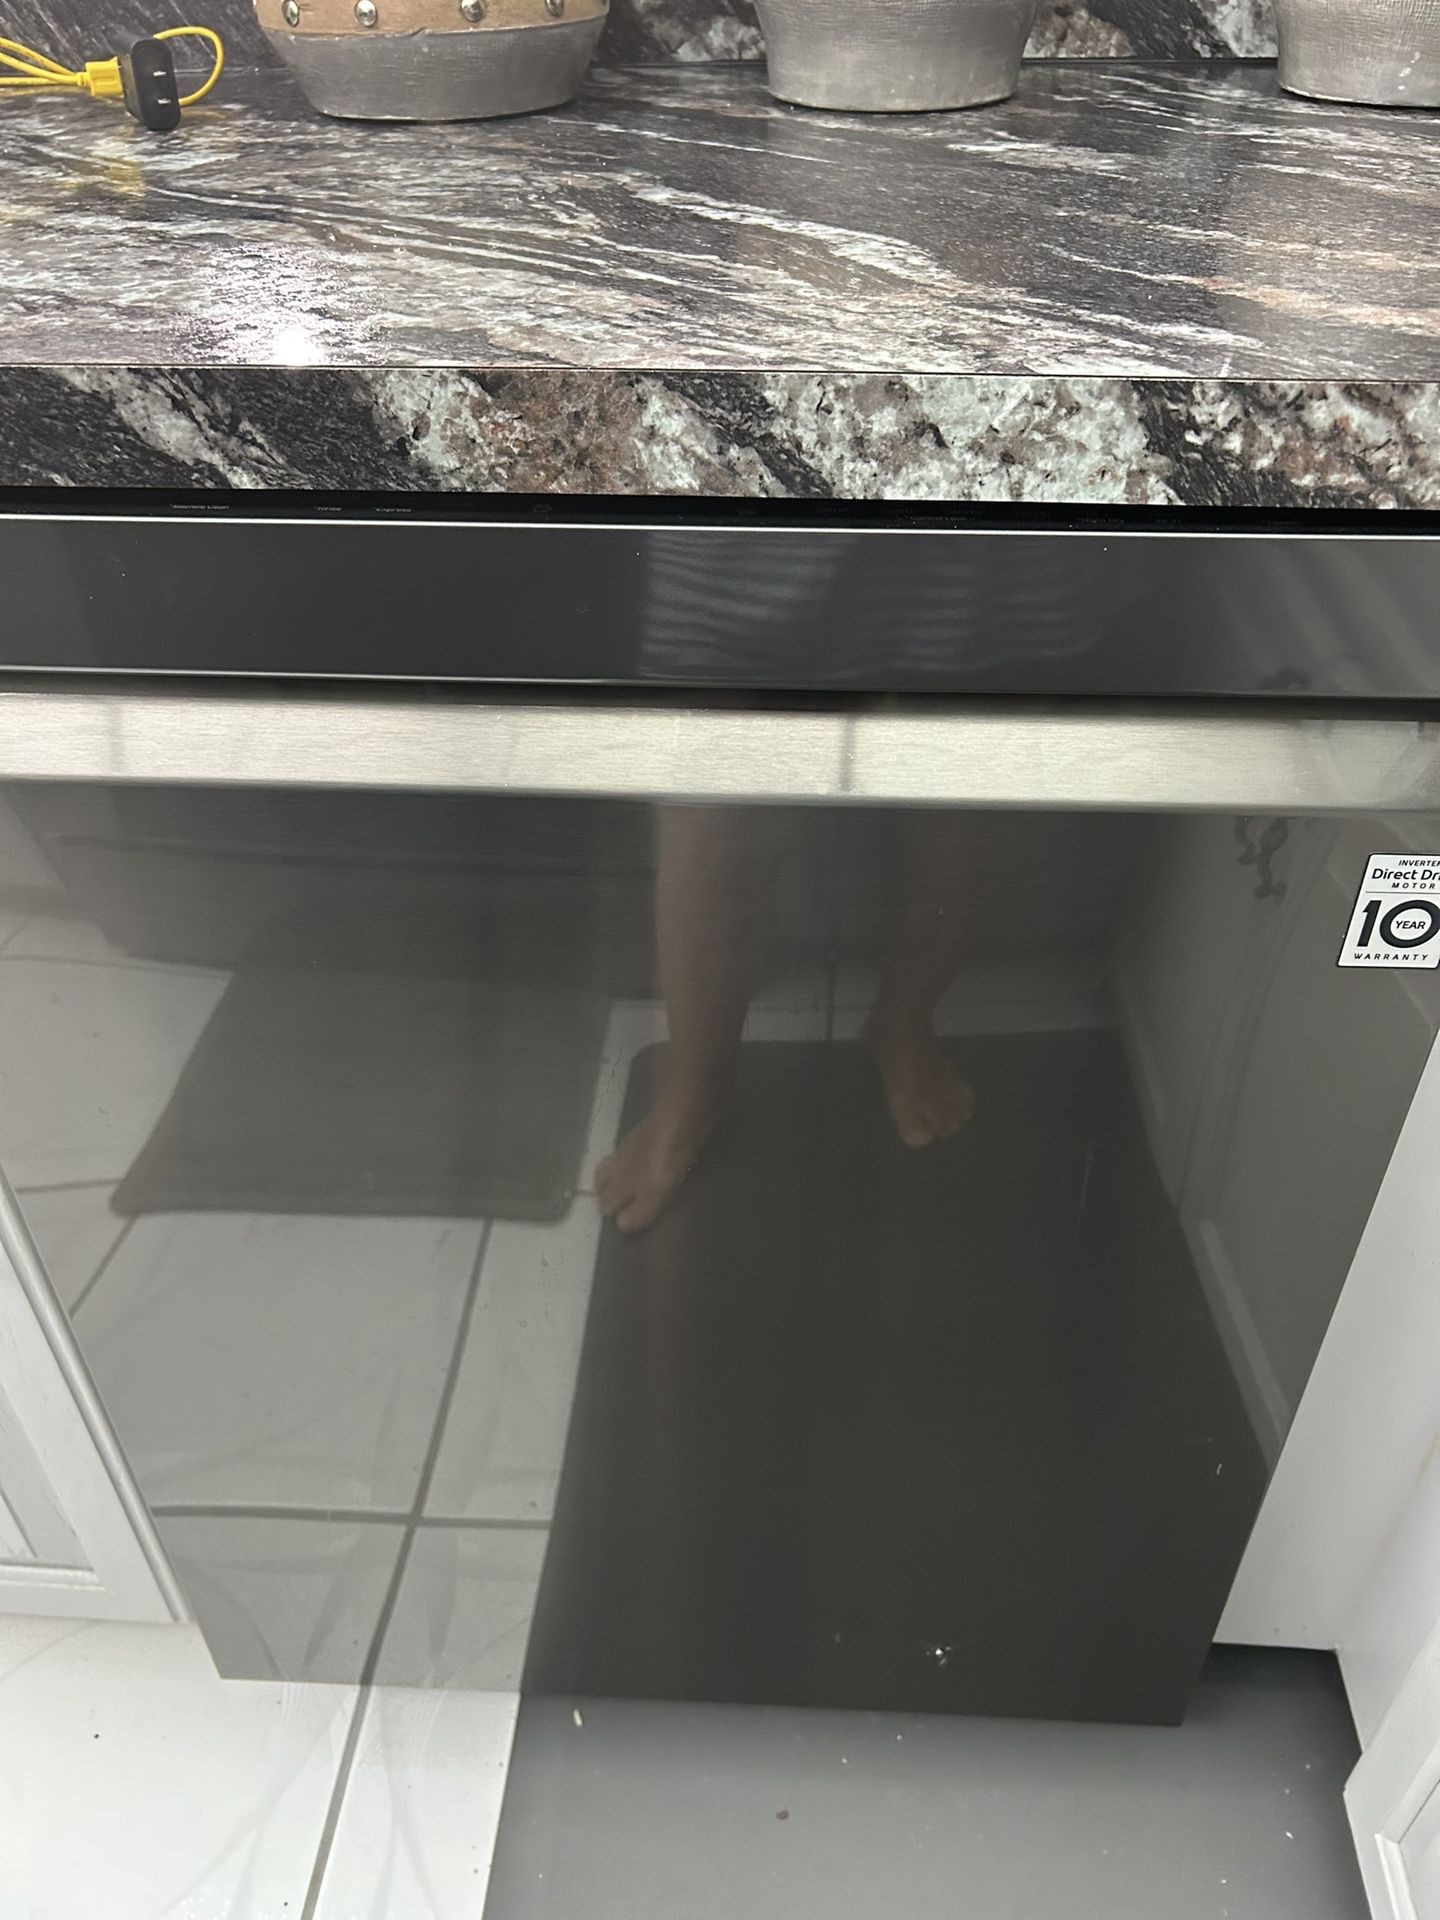 LG Dishwasher Black Stainless